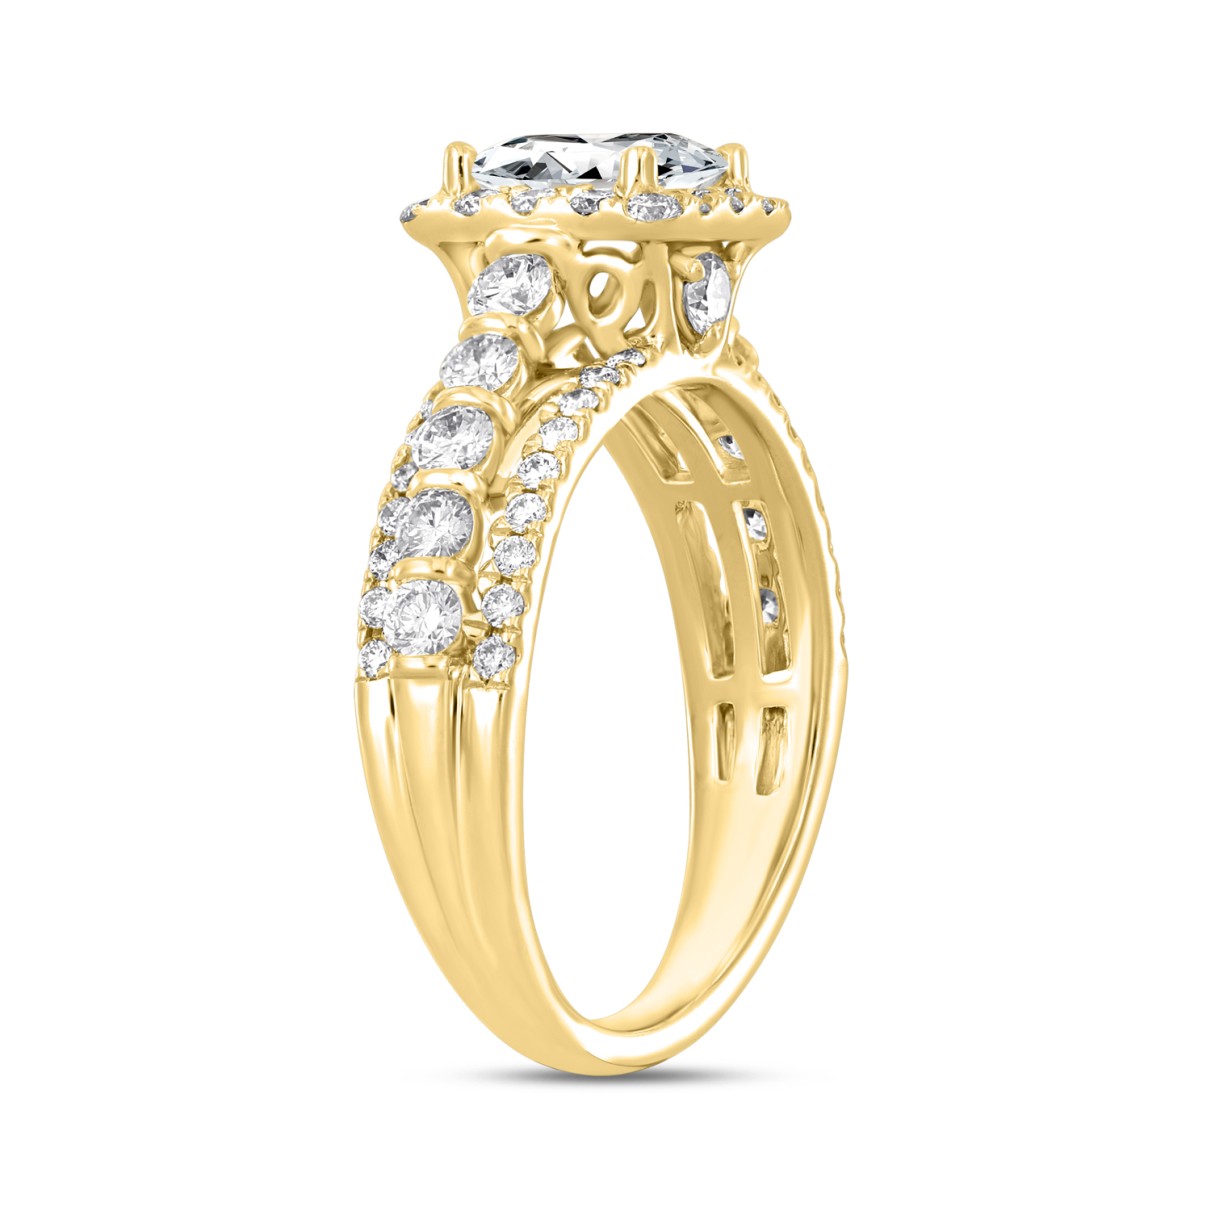 14K YELLOW GOLD 2CT ROUND/PRINCESS DIAMOND LADIES RING (CENTER STONE PRINCESS DIAMOND 1CT )